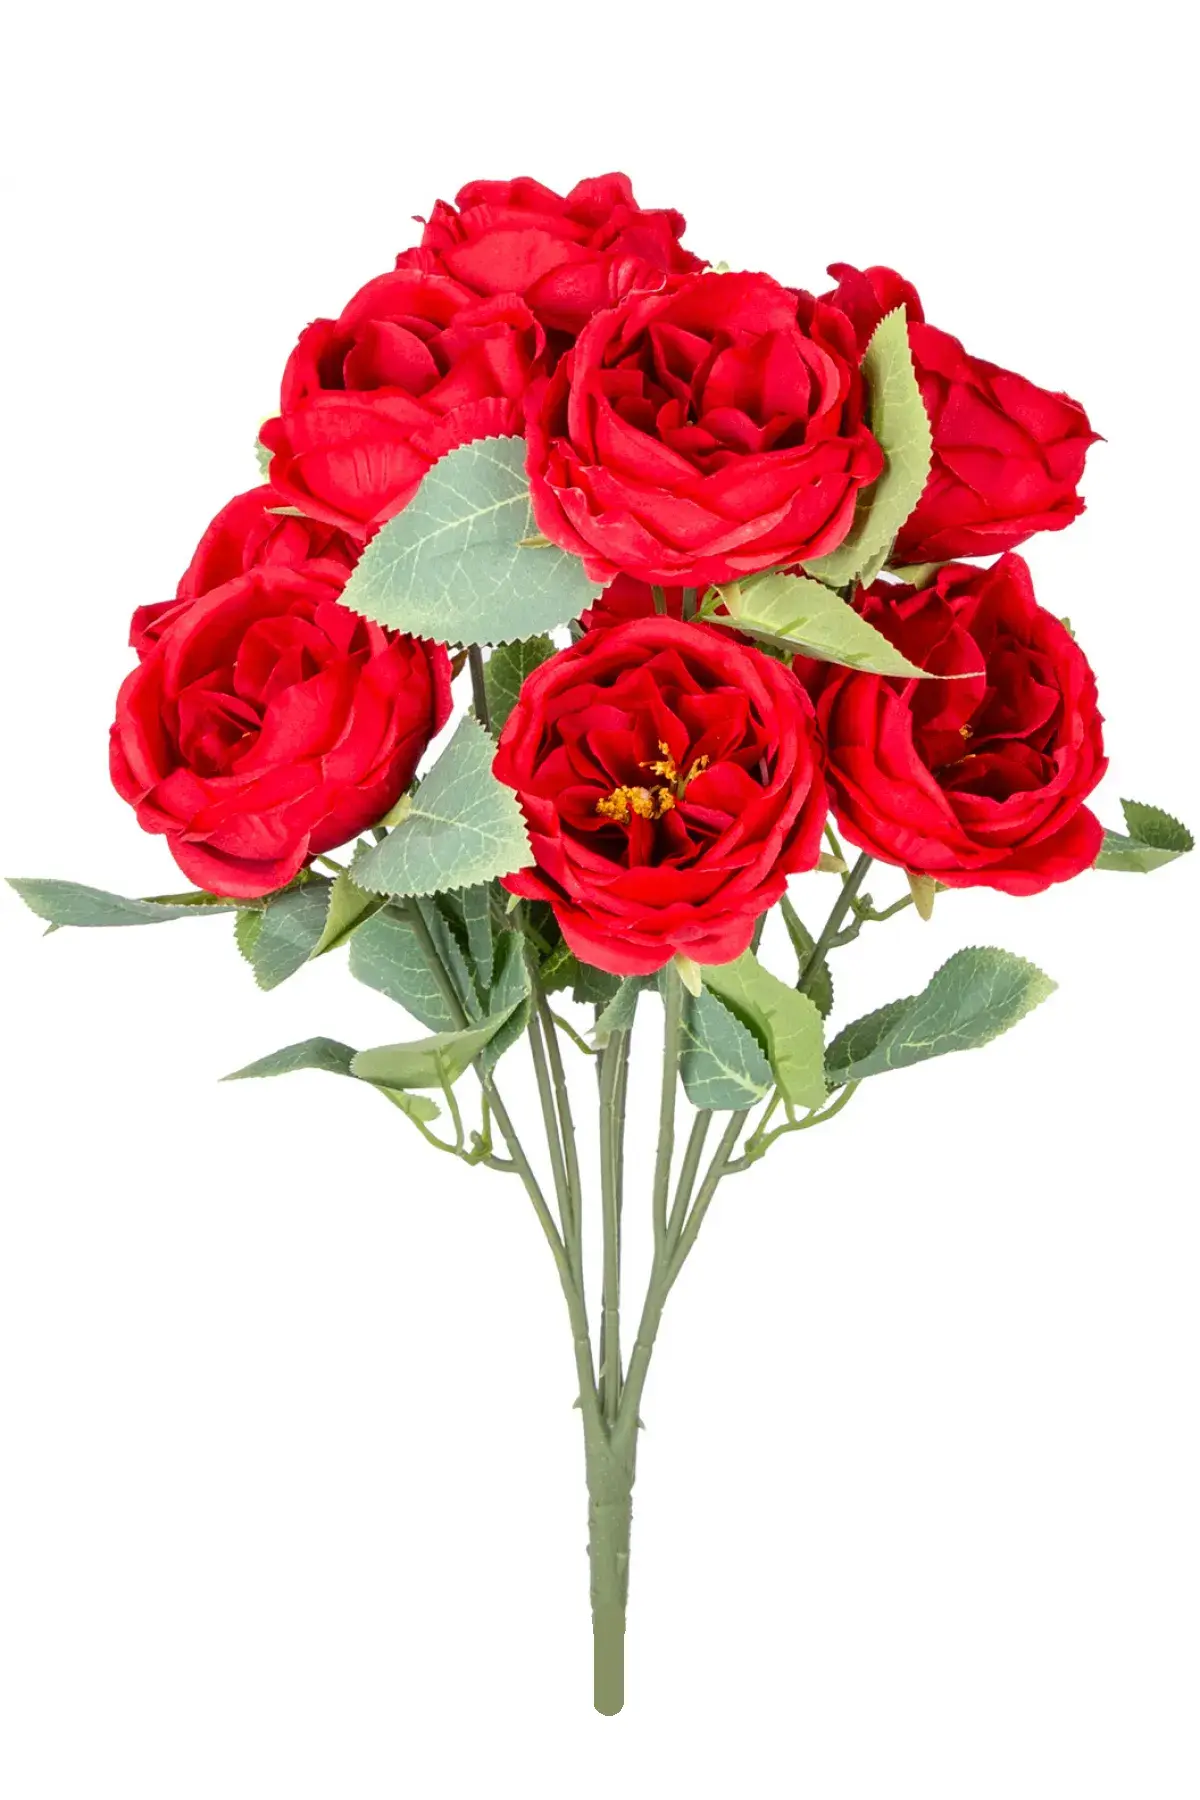 Yapay Çiçek Deposu - Yapay Çiçek 10 Dallı Catalina Rose 45 cm Kırmızı